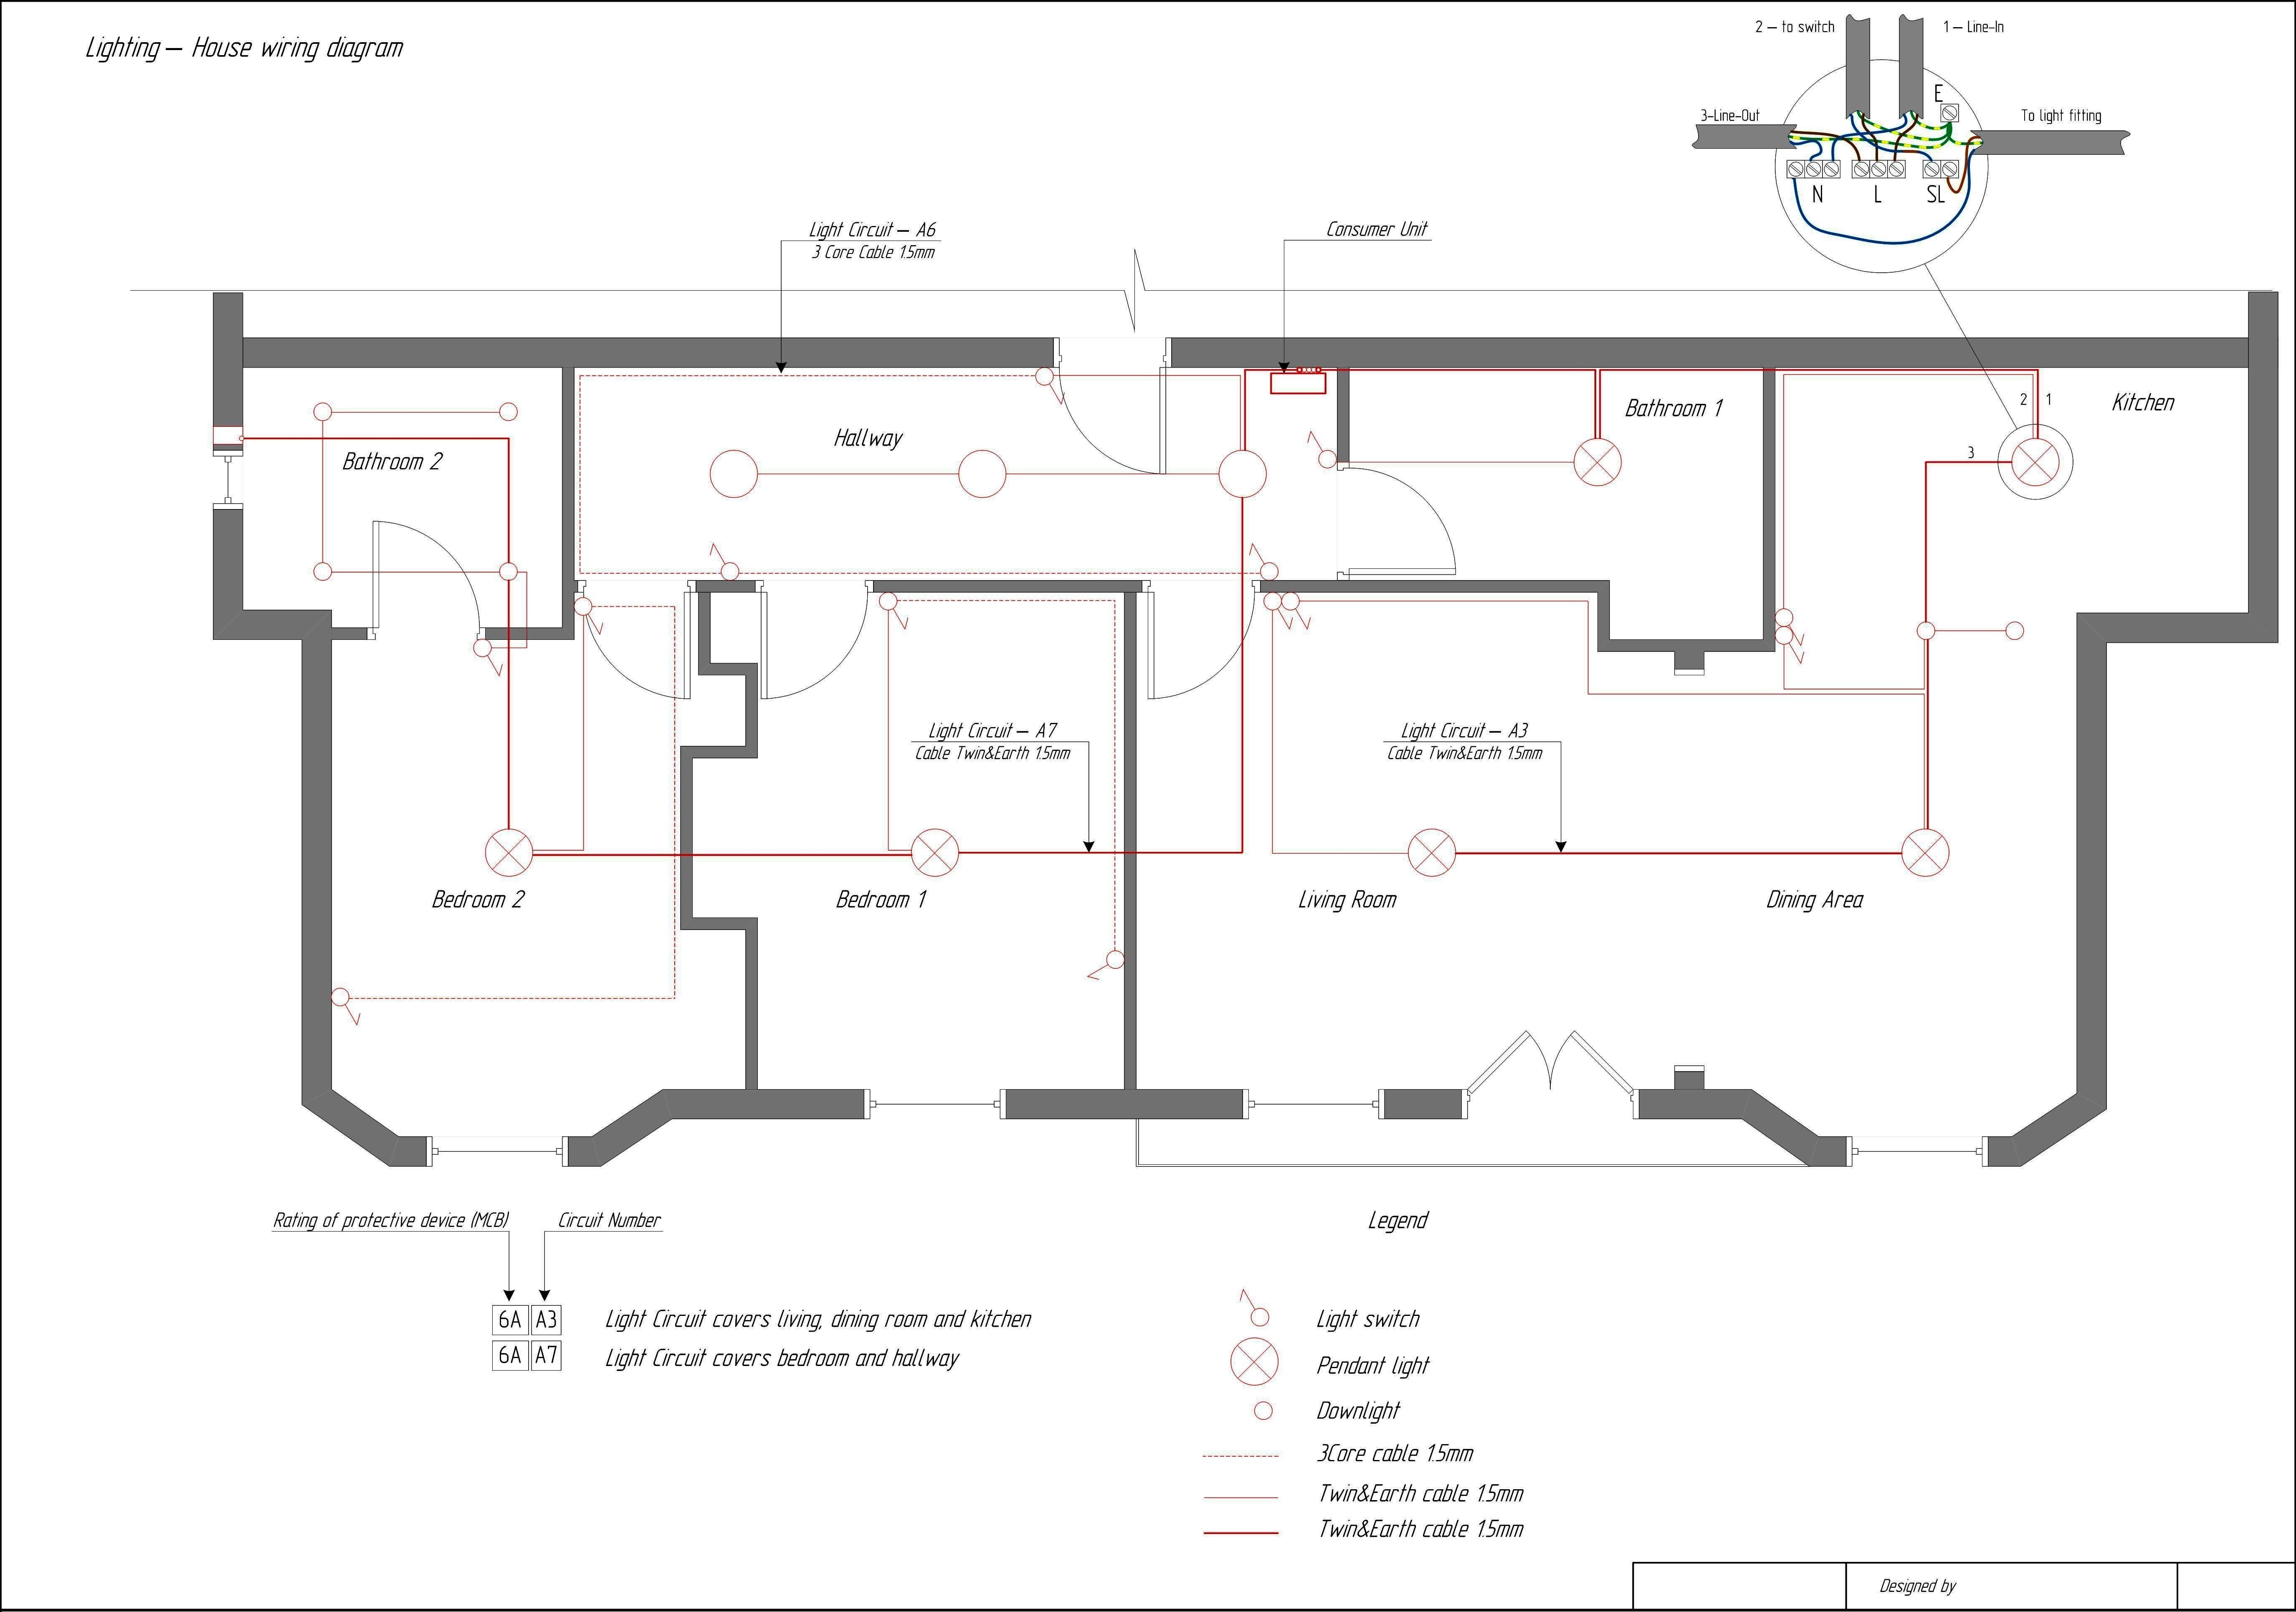 Electrical Wiring House Plan - Data Wiring Diagram Today - Kitchen Electrical Wiring Diagram